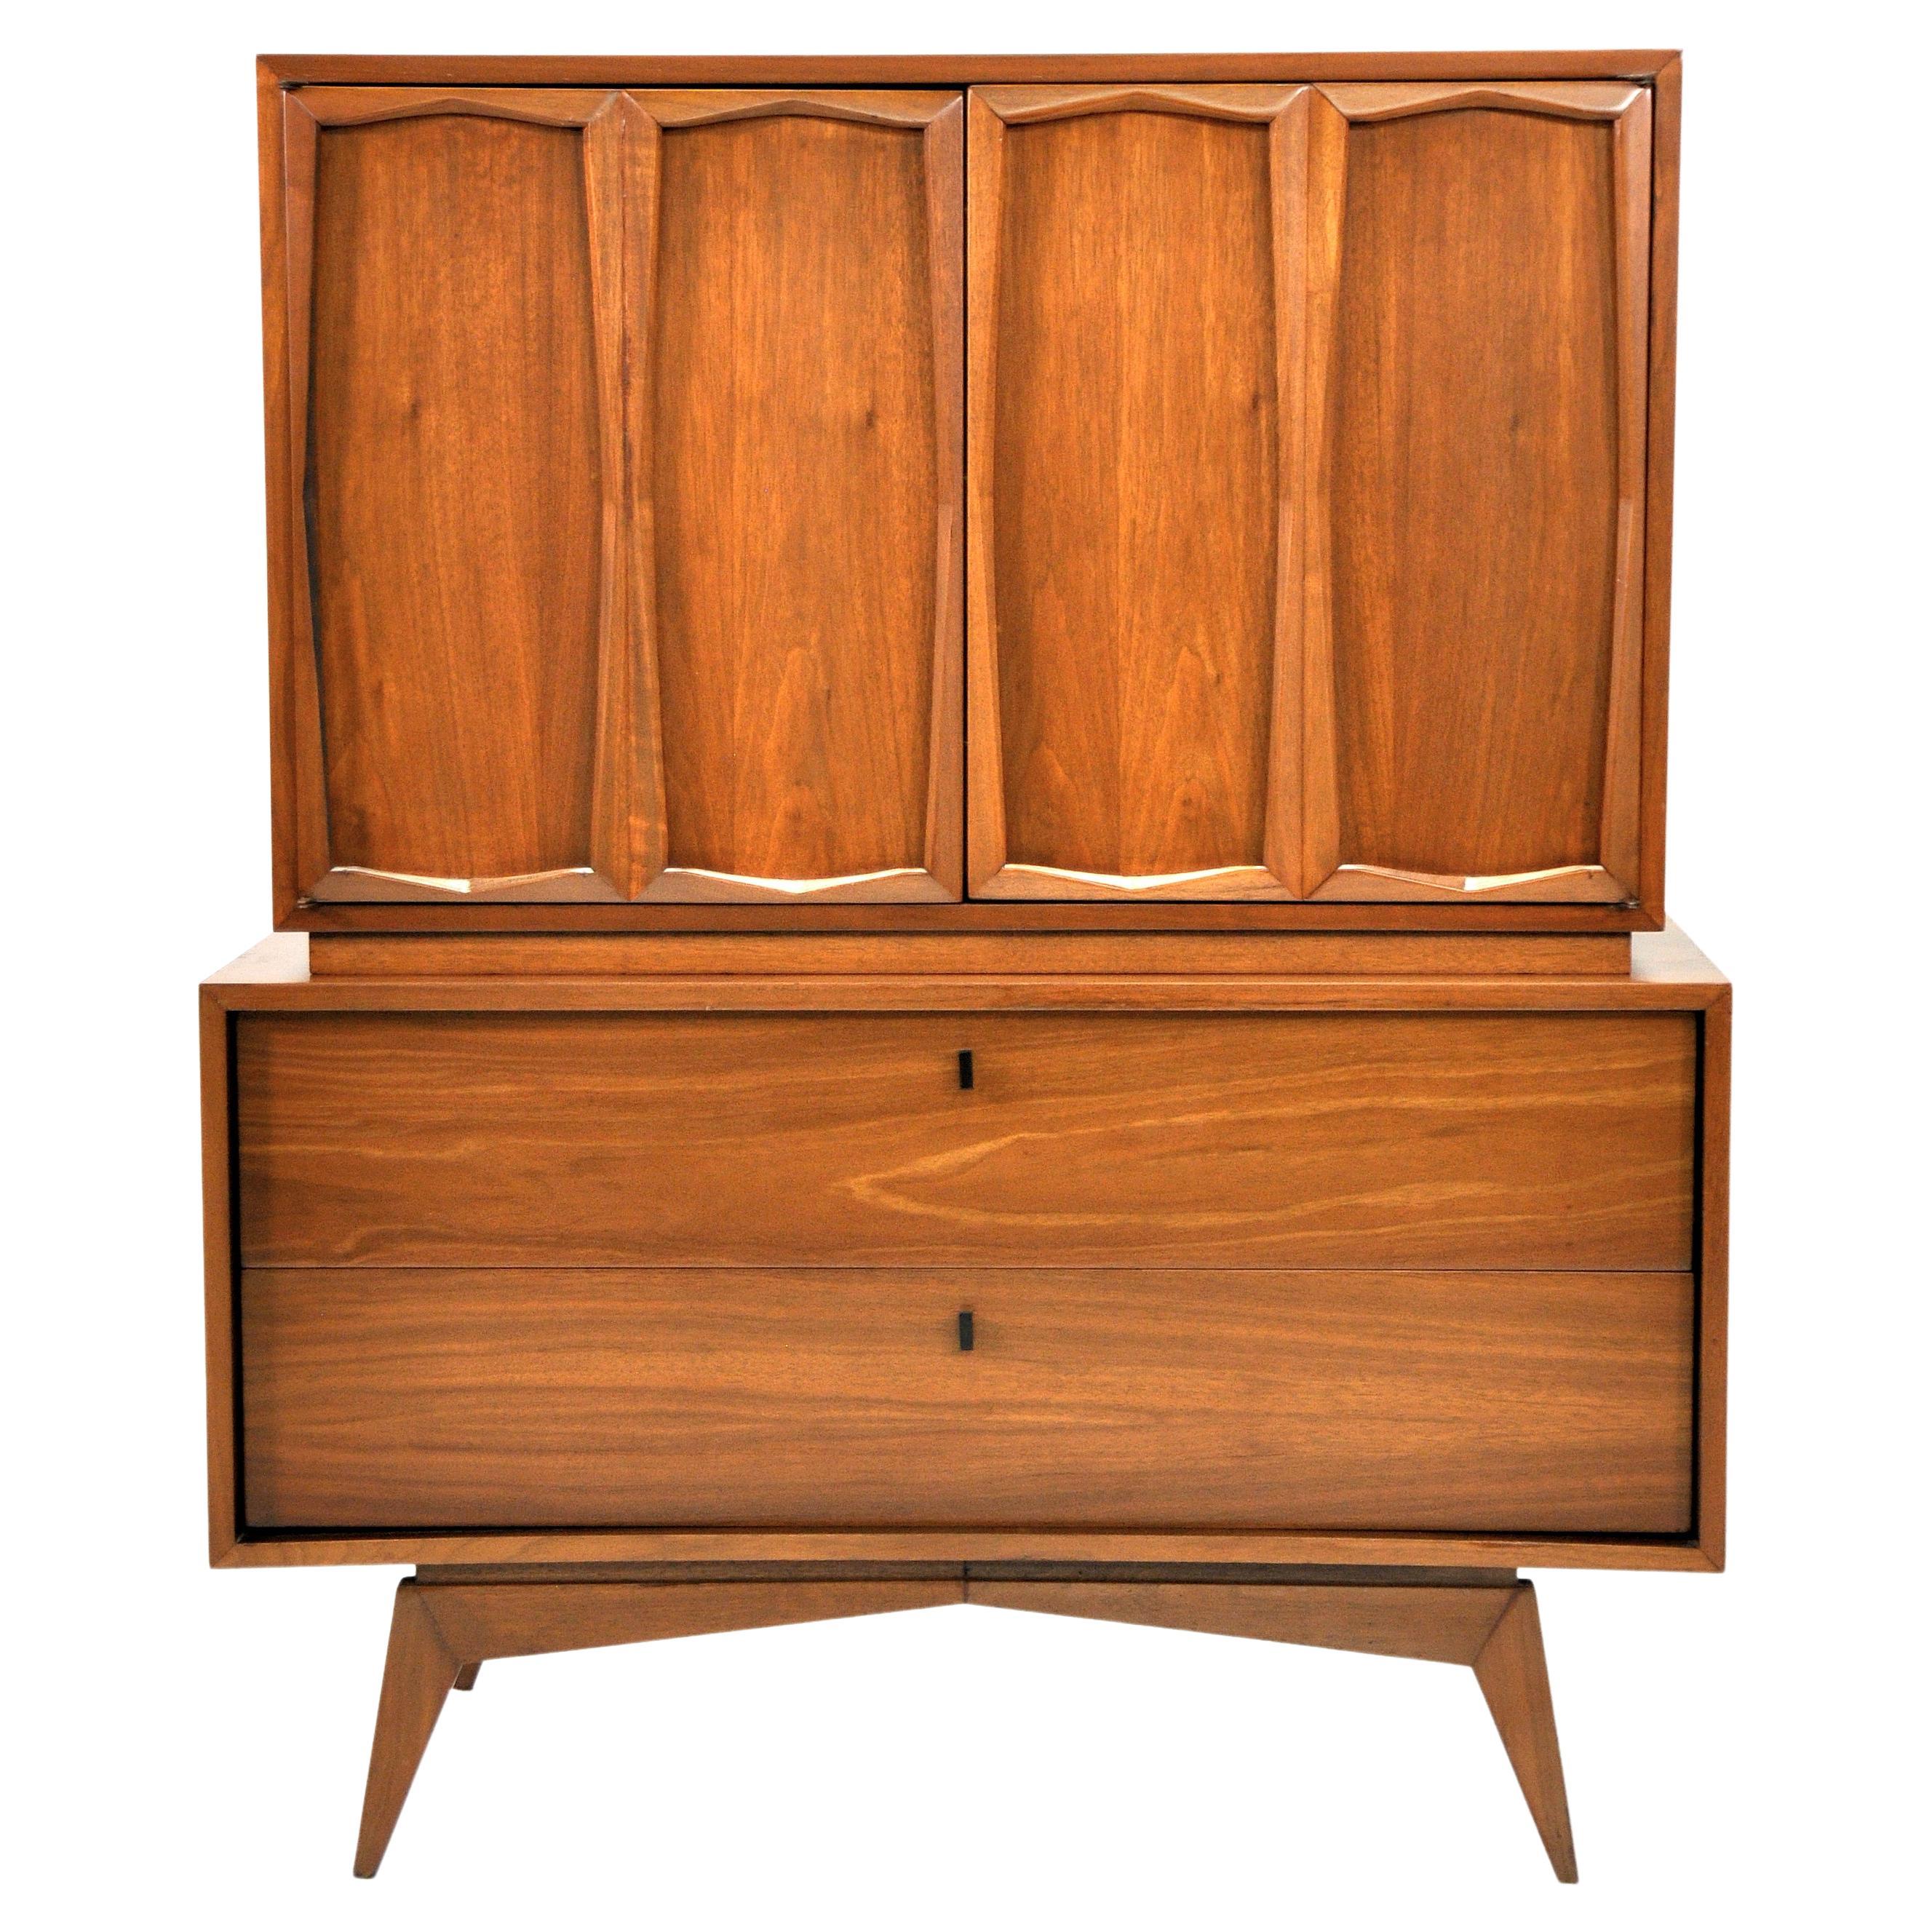 Mid-Century Modern Walnut Highboy Dresser, 1950s